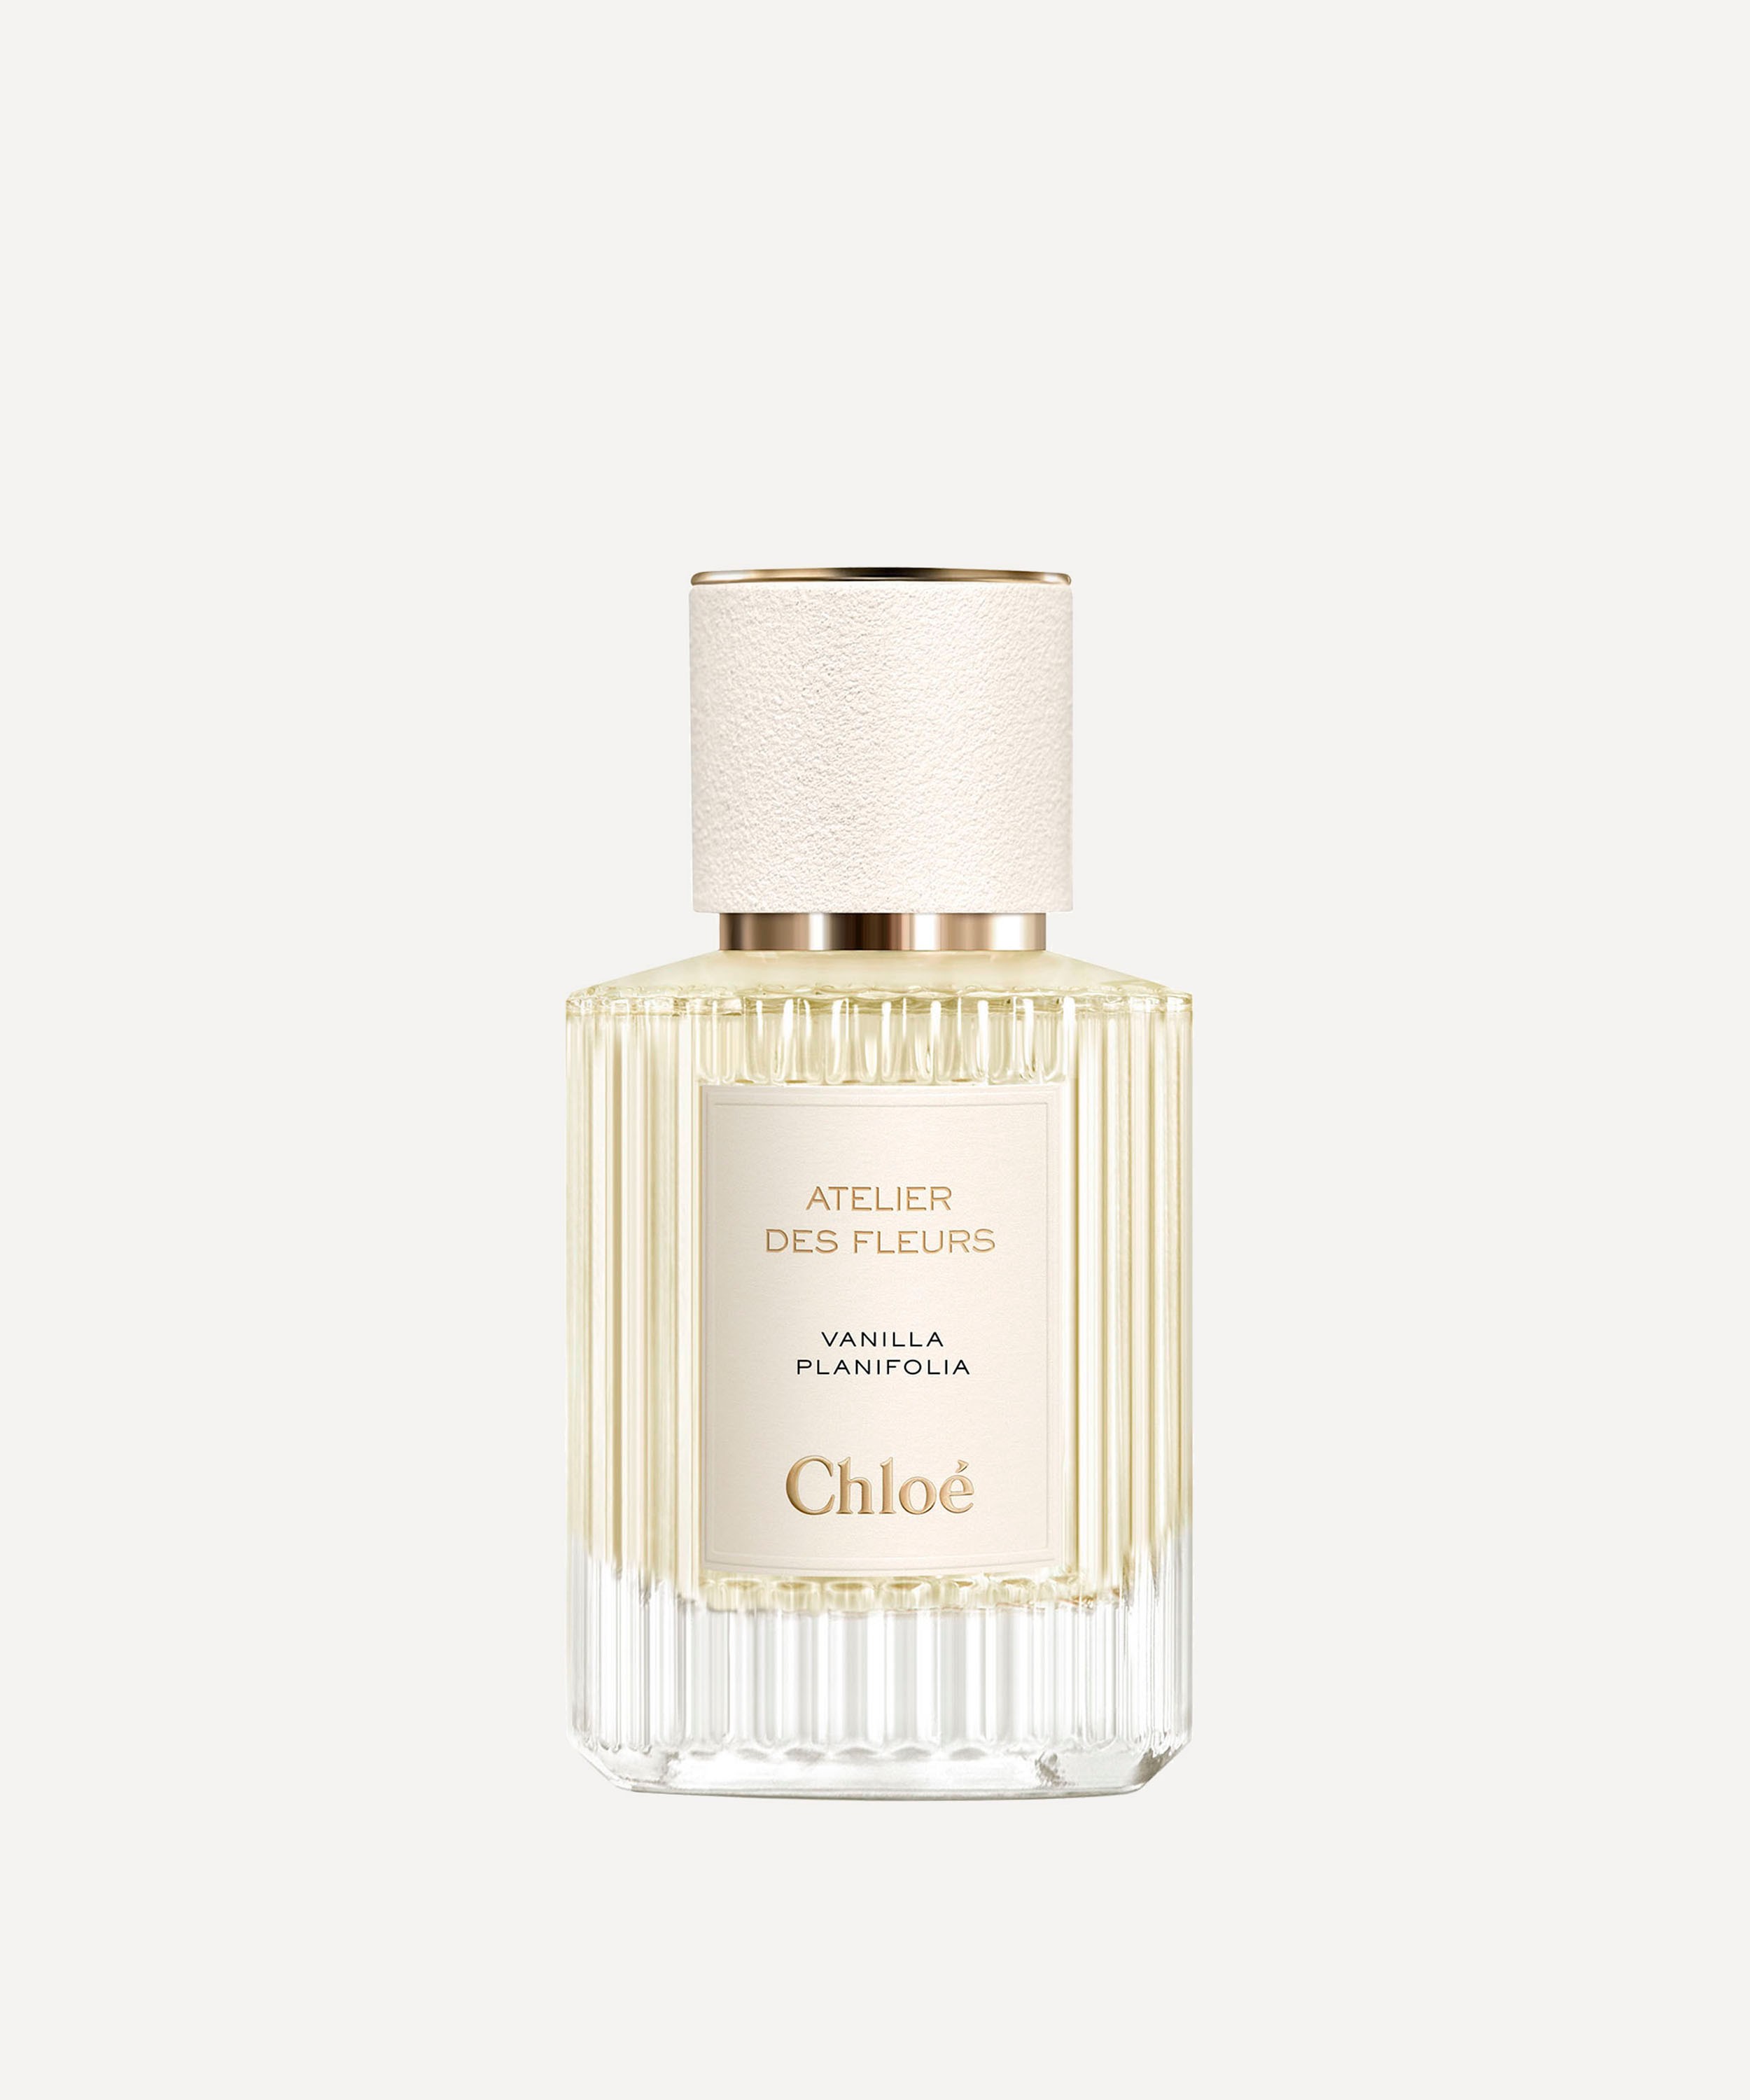 Chloé - Atelier des Fleurs Vanilla Planifolia Eau de Parfum 50ml